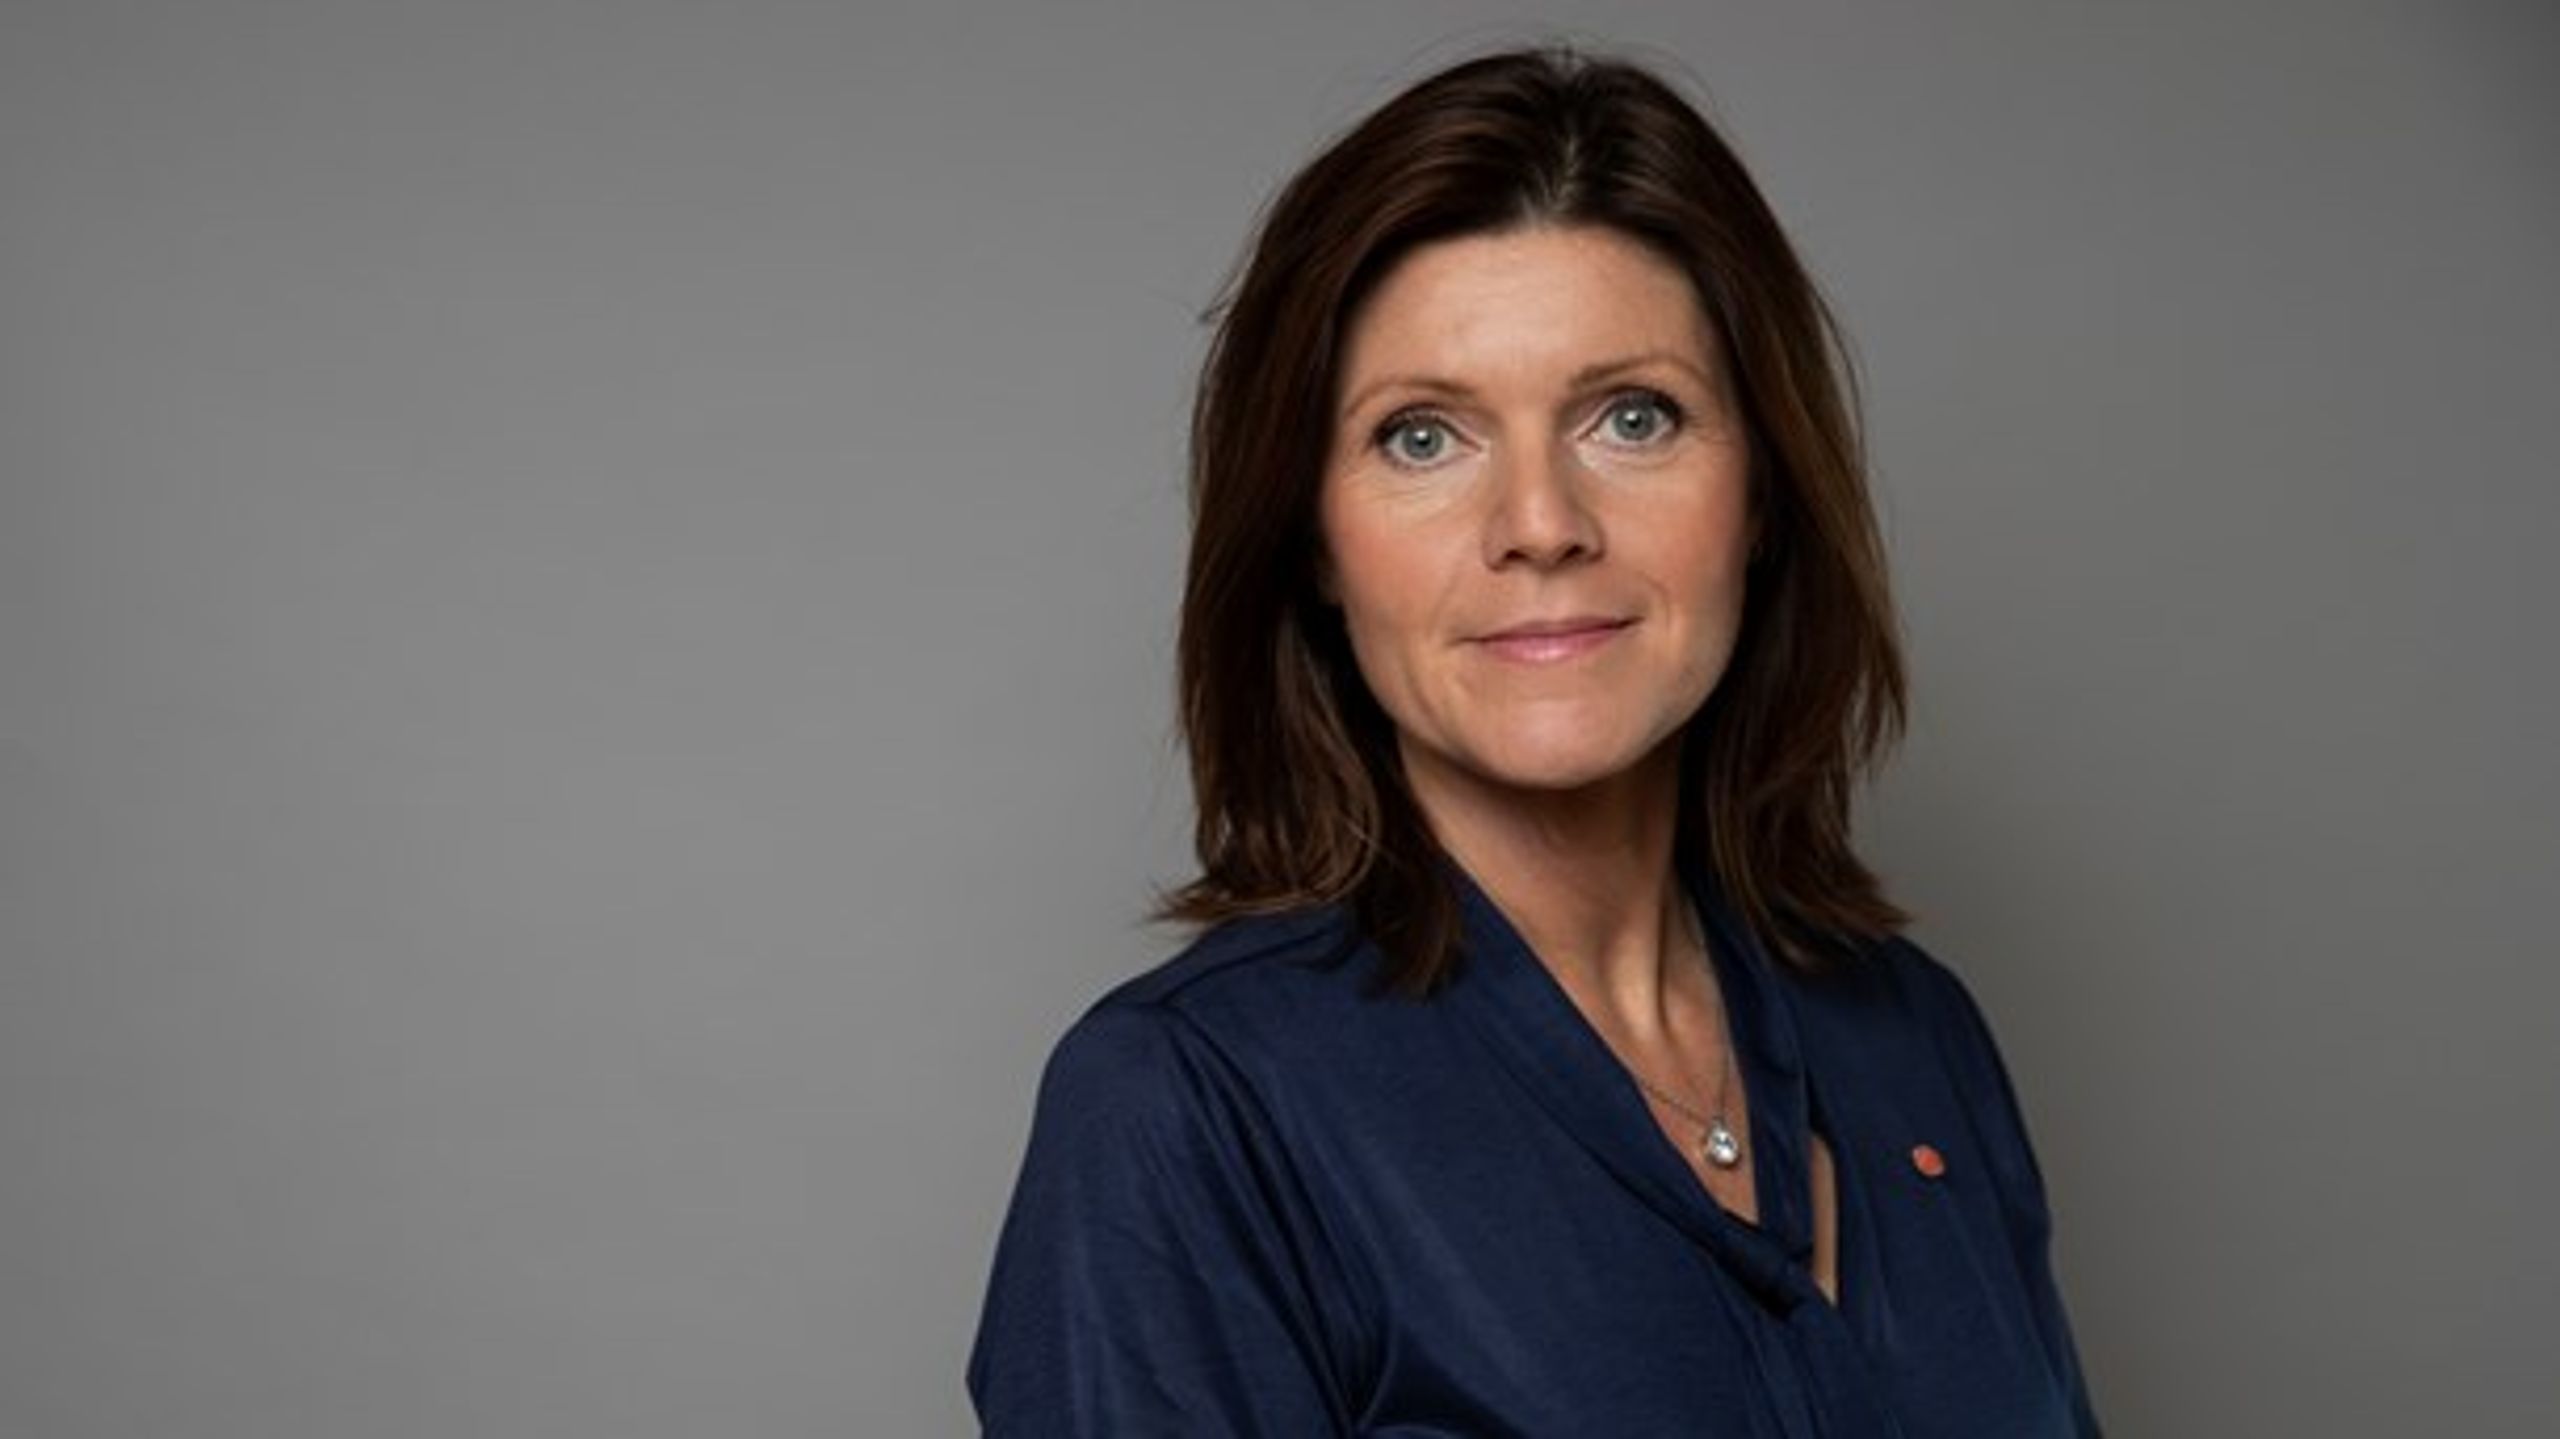 Eva Nordmark har indtil nu været formand for fagforeningen TCO, men er nu udpeget som ny arbejdsmarkedsminister i Sverige.